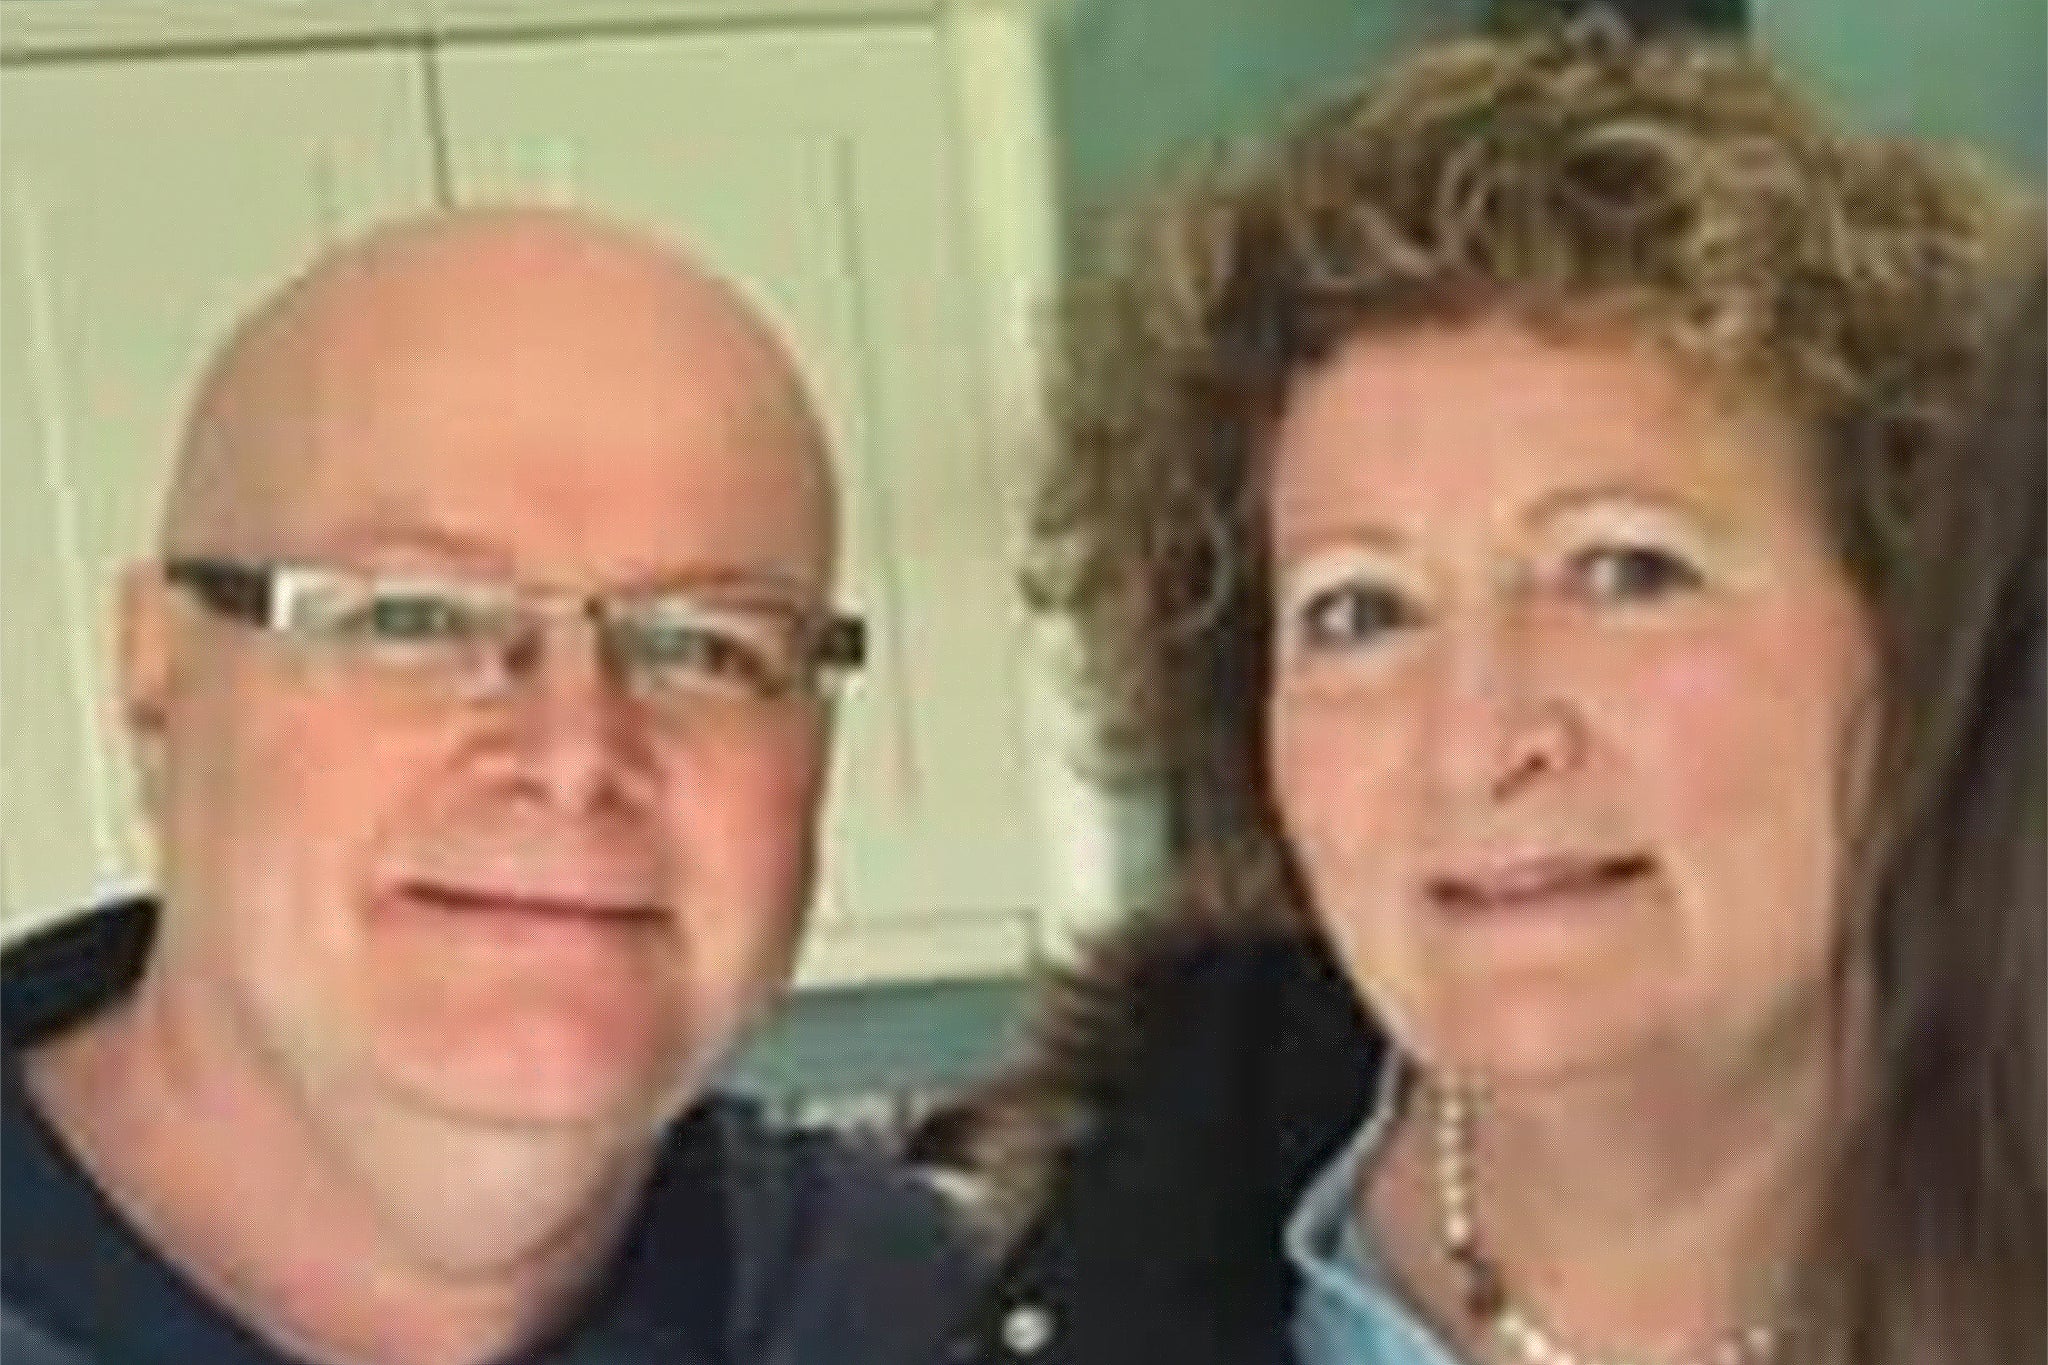 Stephen y Carol Baxter fueron encontrados sin vida en los sillones de su casa en Essex, Reino Unido